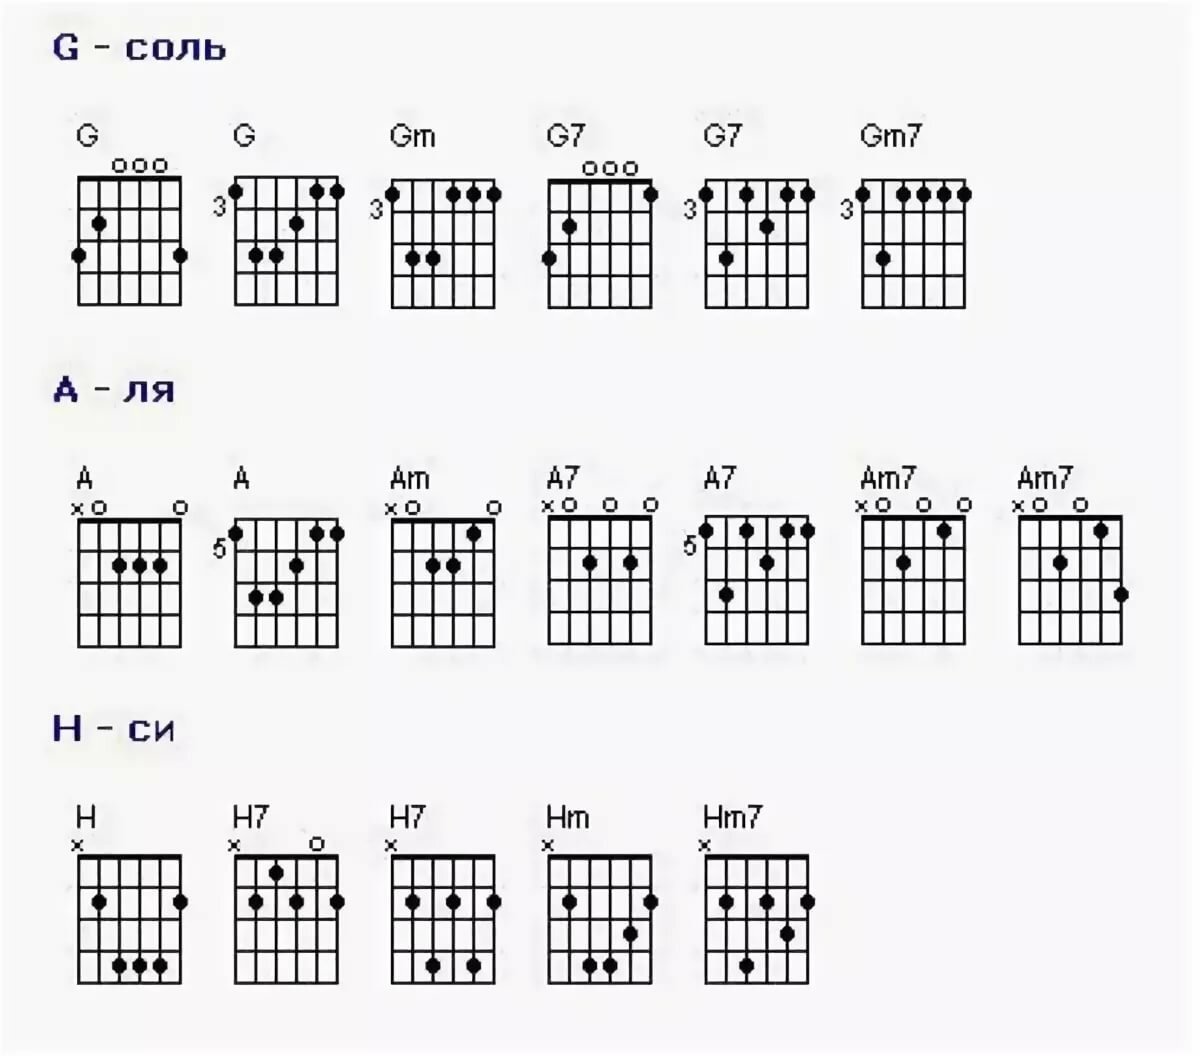 Аккорды для гитары таблица для начинающих. Аккорды для гитары для начинающих 6 струн. Базовые аккорды на гитаре 6 струн. Аккорды на гитаре 6 струн схема. Схемы аккордов 6 струнной гитары.